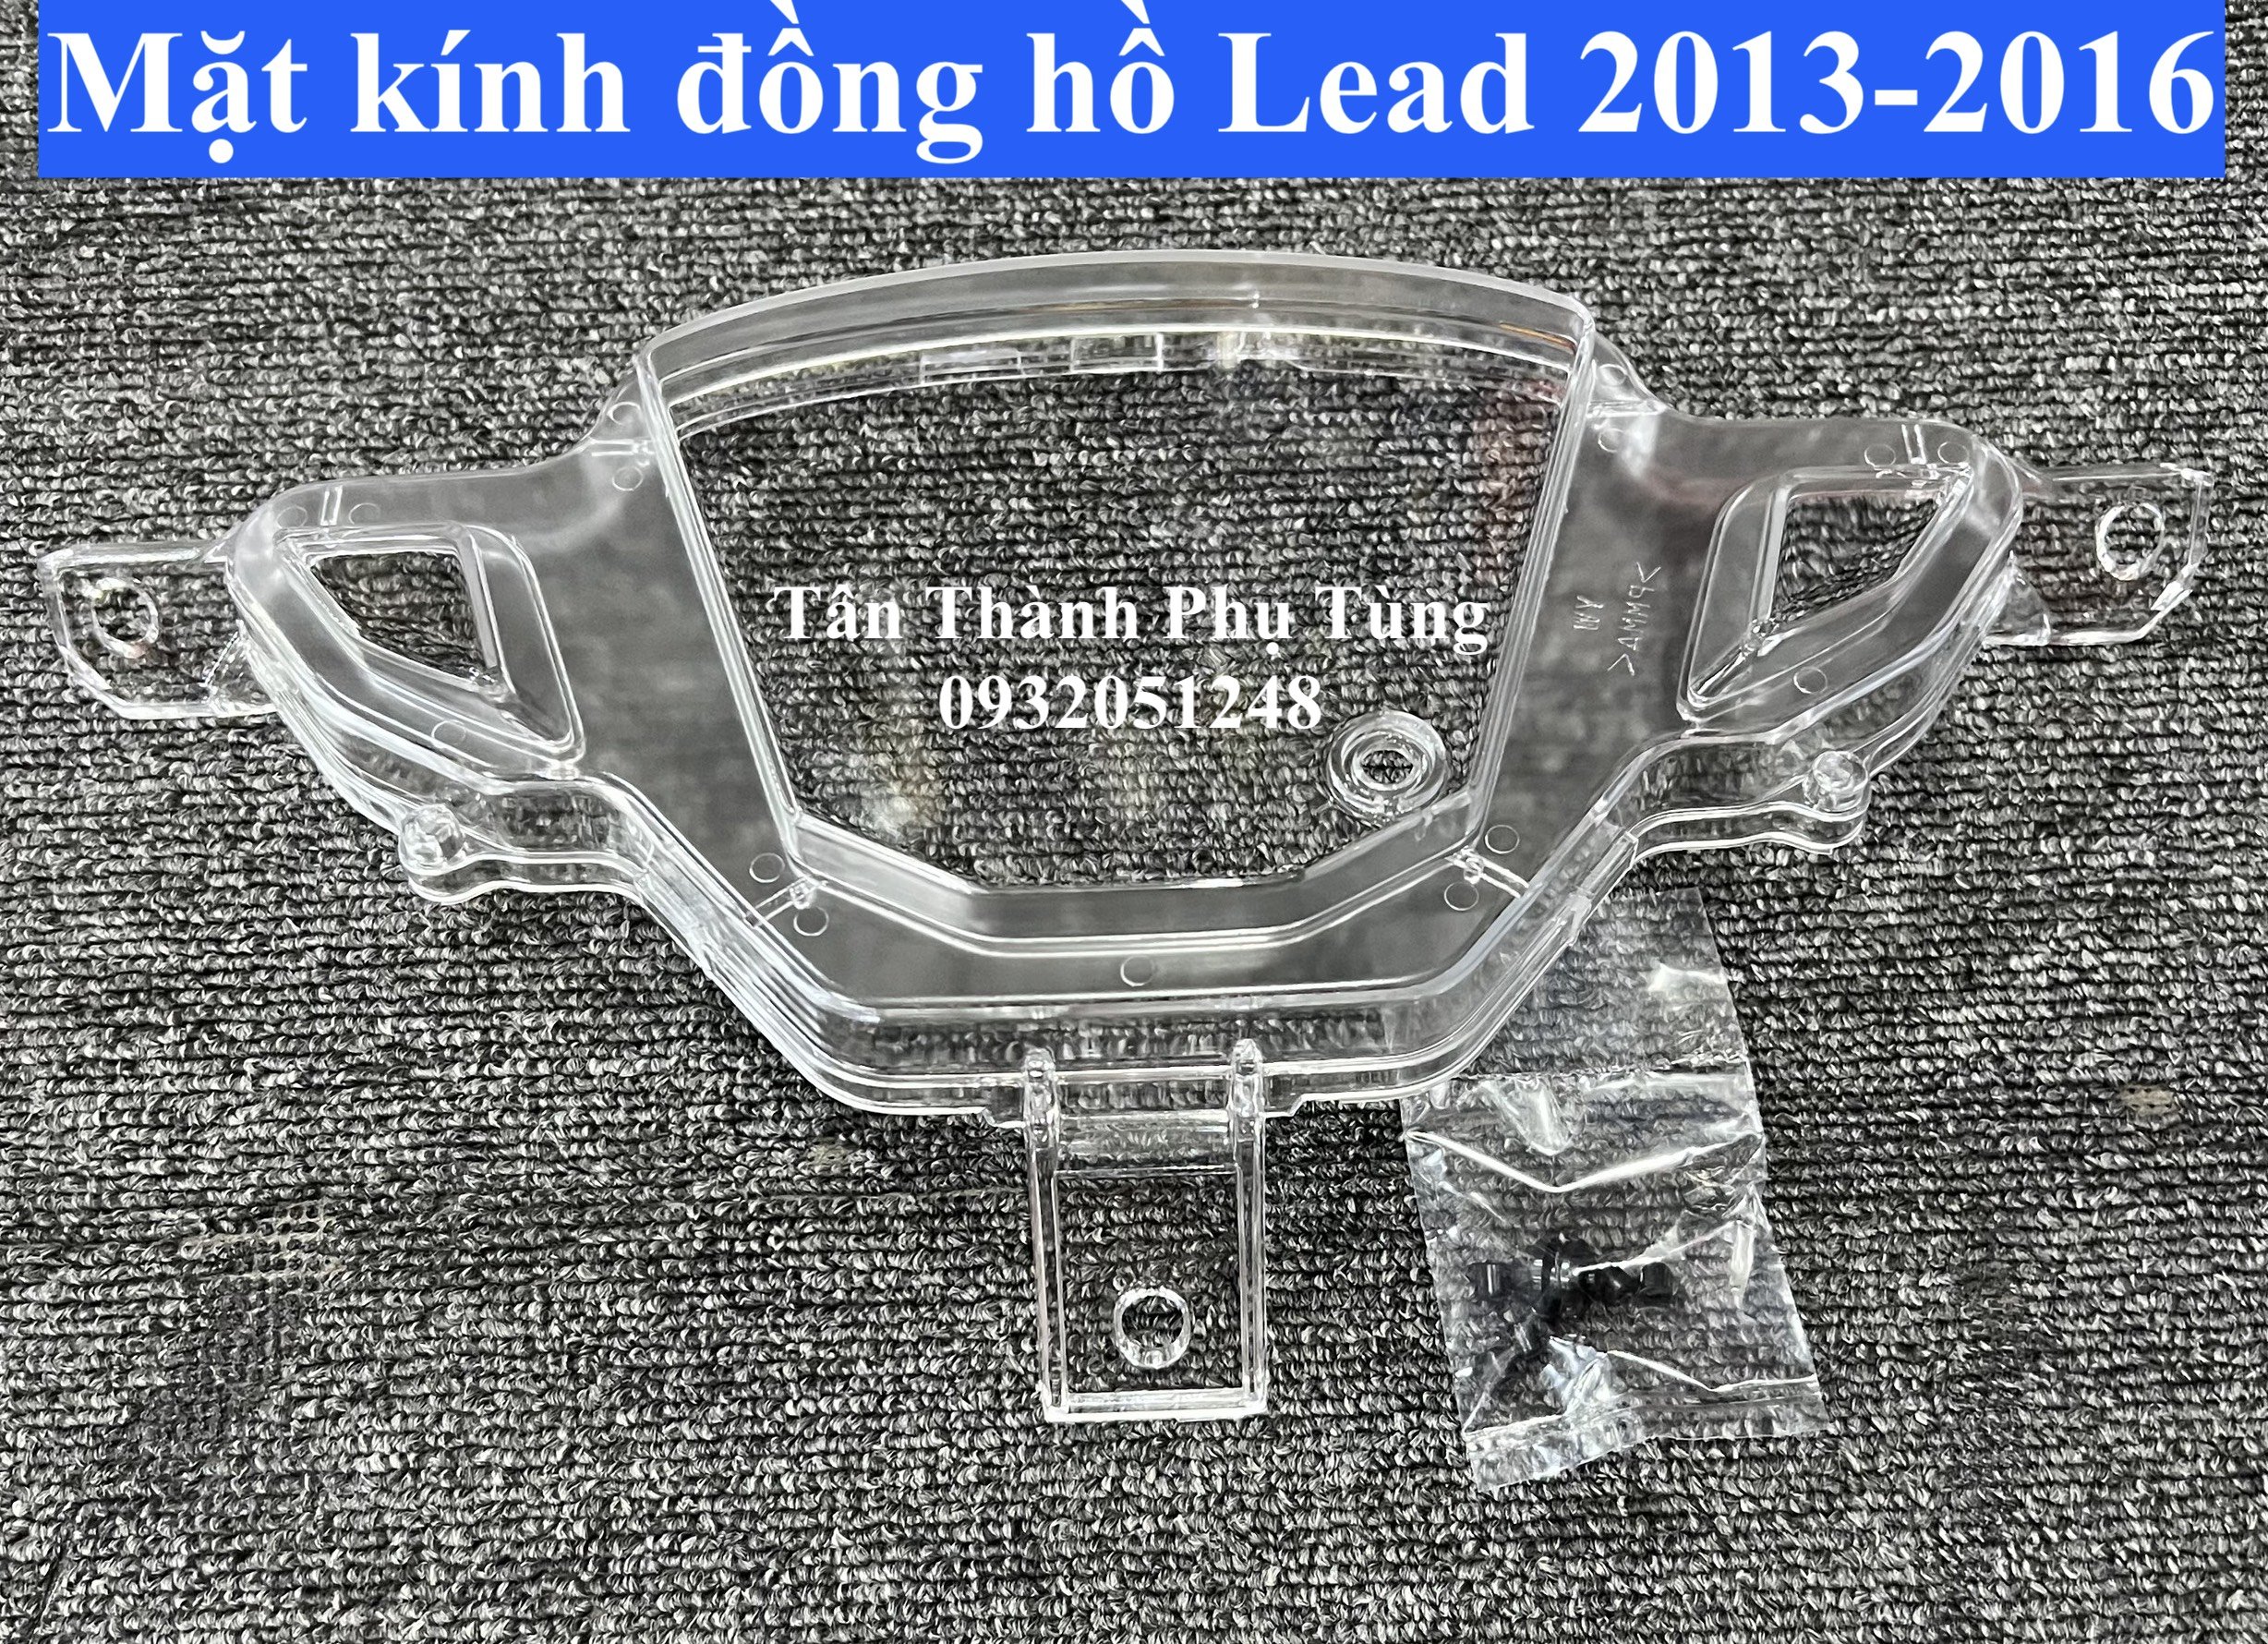 Mặt kính đồng hồ dành cho Lead 2013-2016